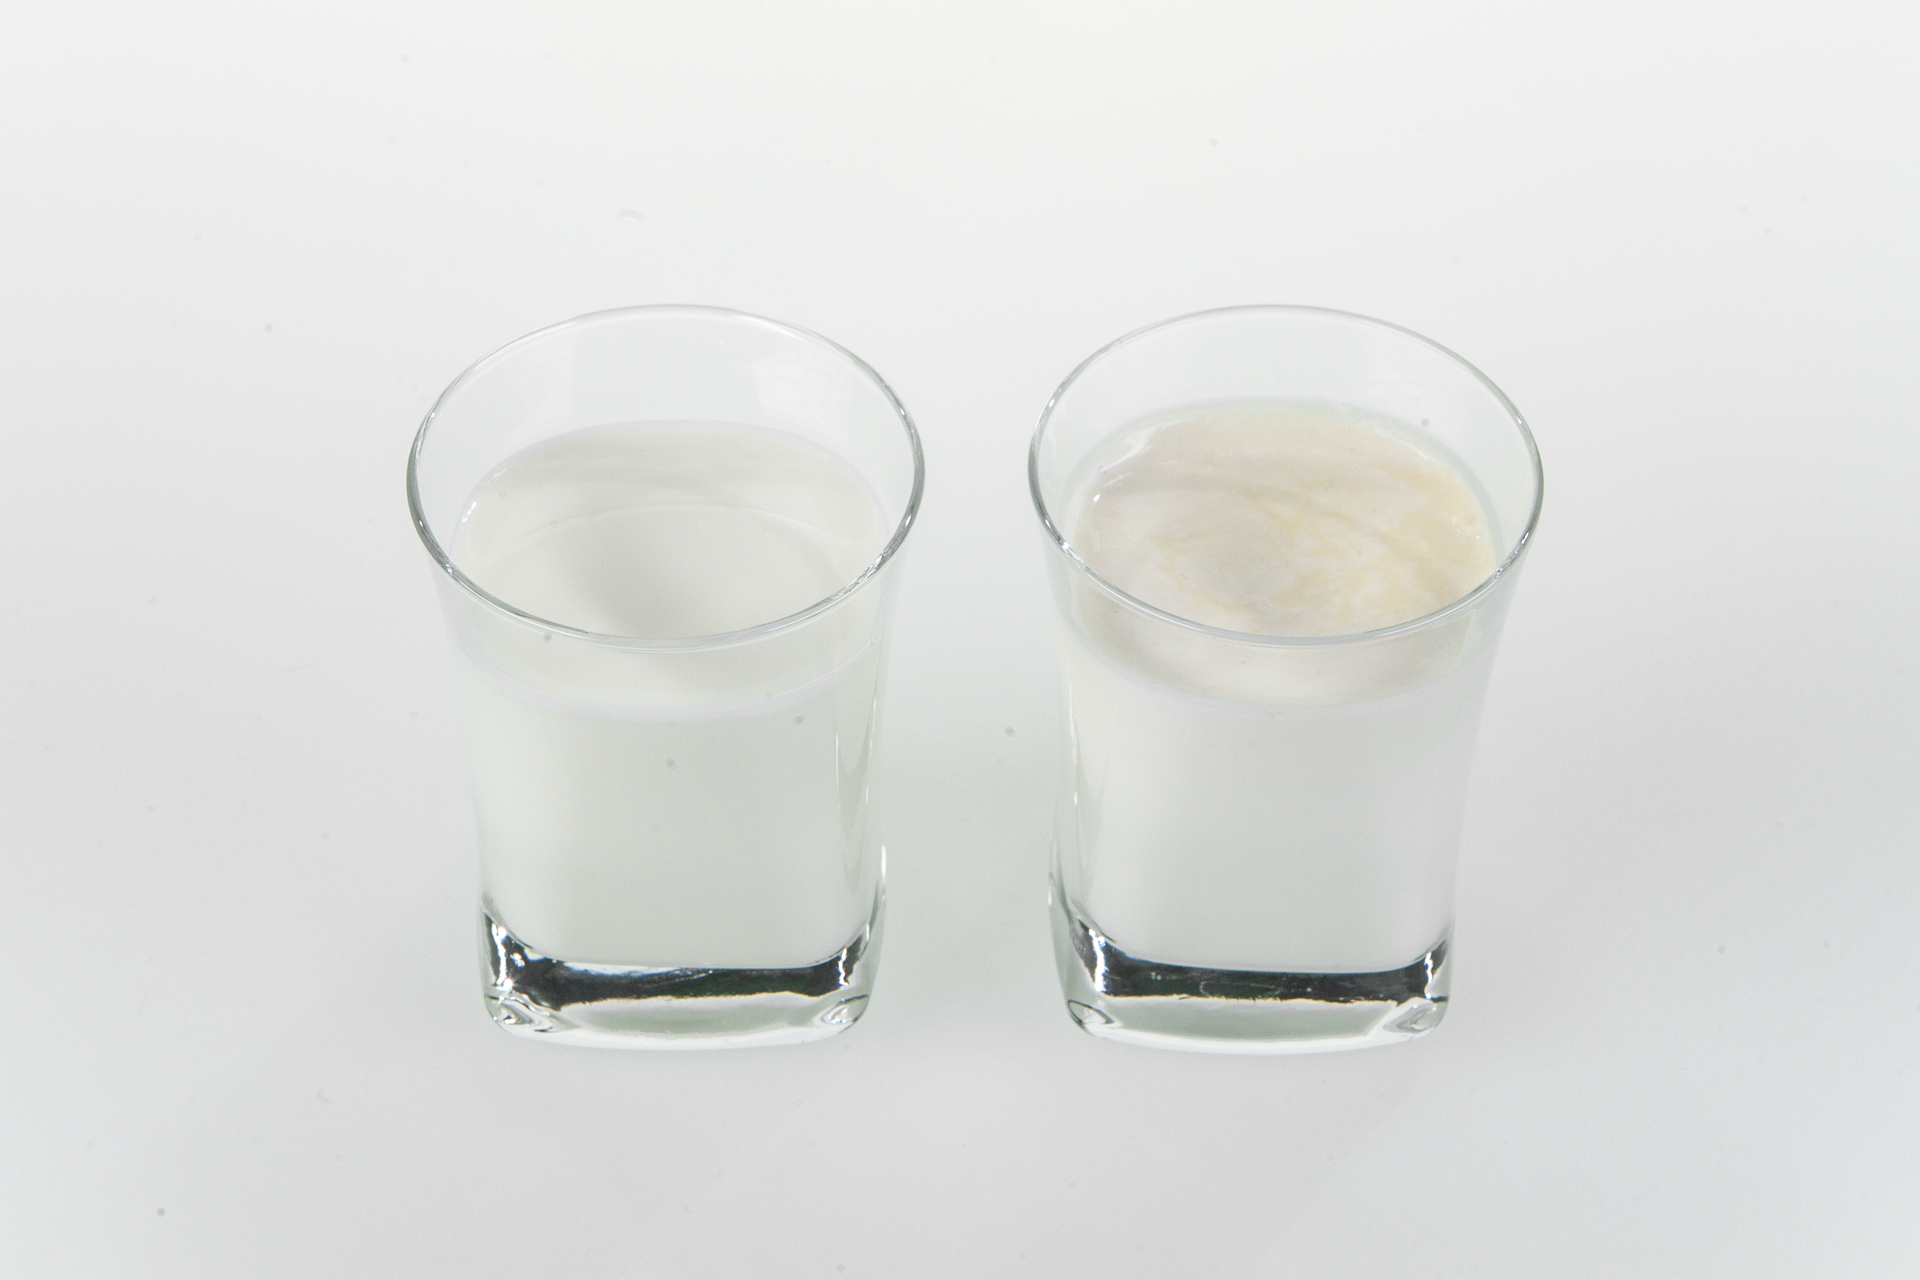 Na zdjęciu przedstawiono dwie szklanki, w jednej znajduje się mleko, a w drugiej mleko na którego powierzchni zaczęła zbierać się śmietana. Szklanki są przeźroczyste. W szklance, w której zaczęła zbierać się śmietana widoczny jest żółtawy kożuch na powierzchni cieczy.